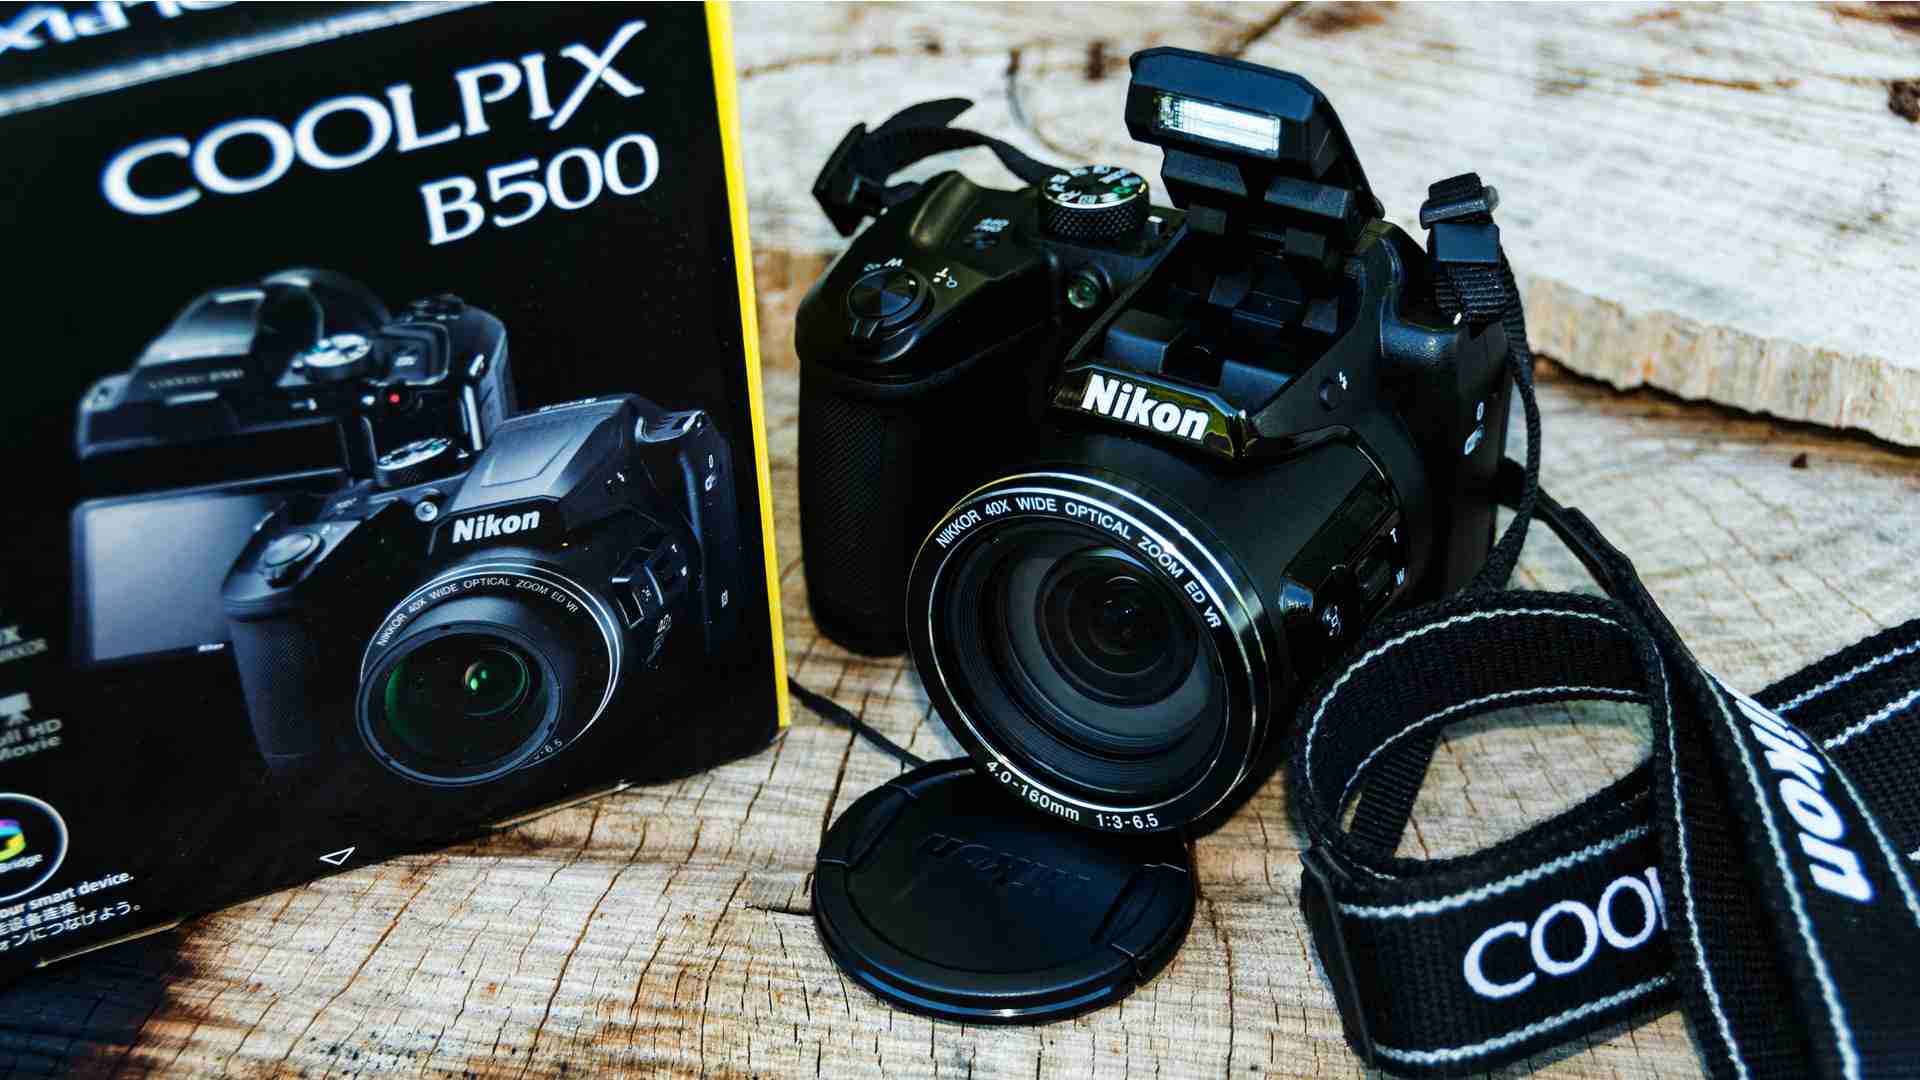 Máquina fotográfica semiprofissional Nikon B500 ao lado de sua caixa apoiada em mesa de madeira